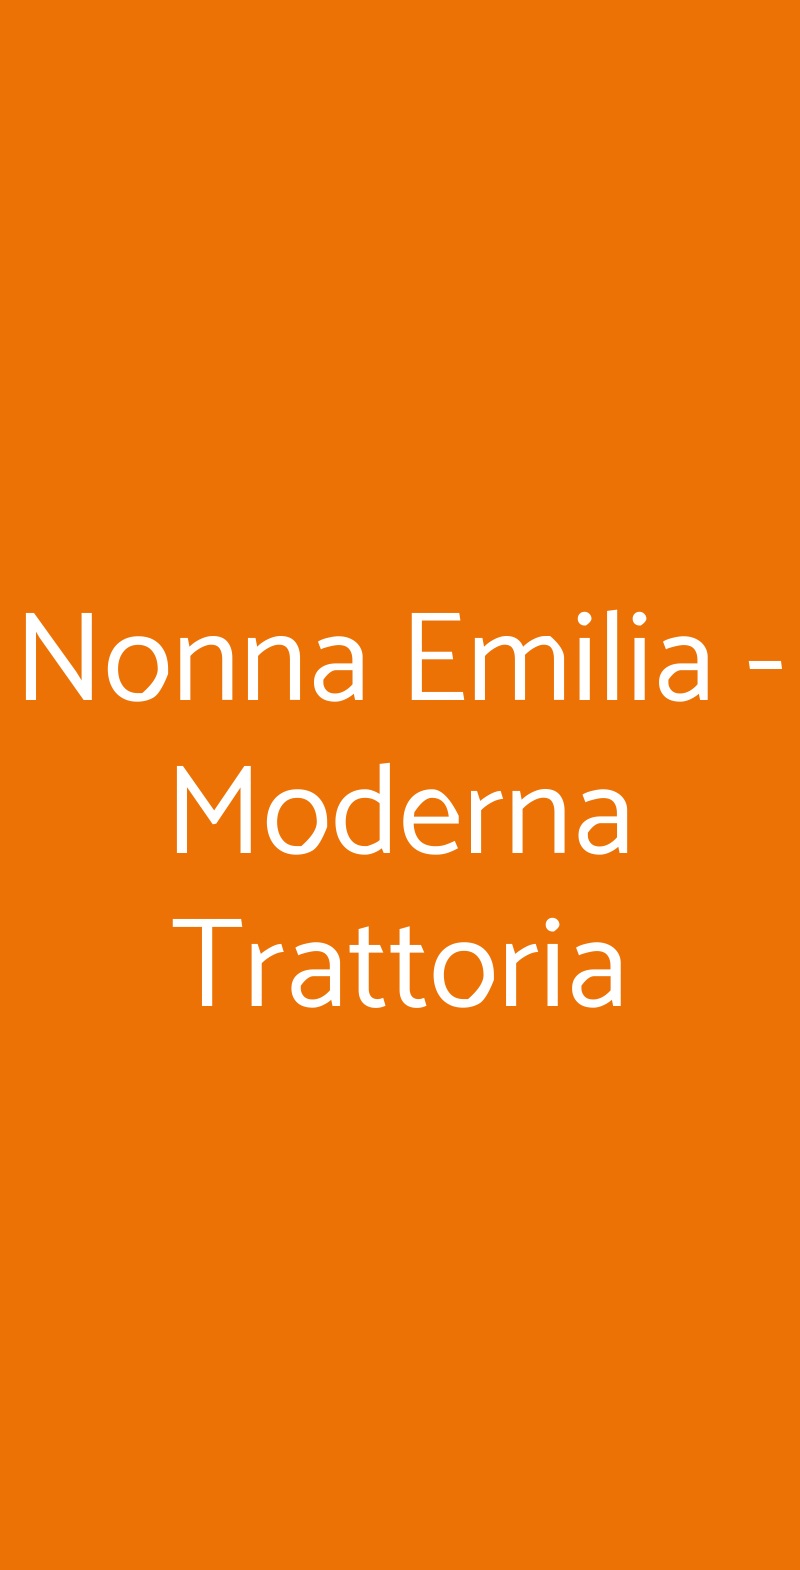 Nonna Emilia - Moderna Trattoria San Donato Milanese menù 1 pagina